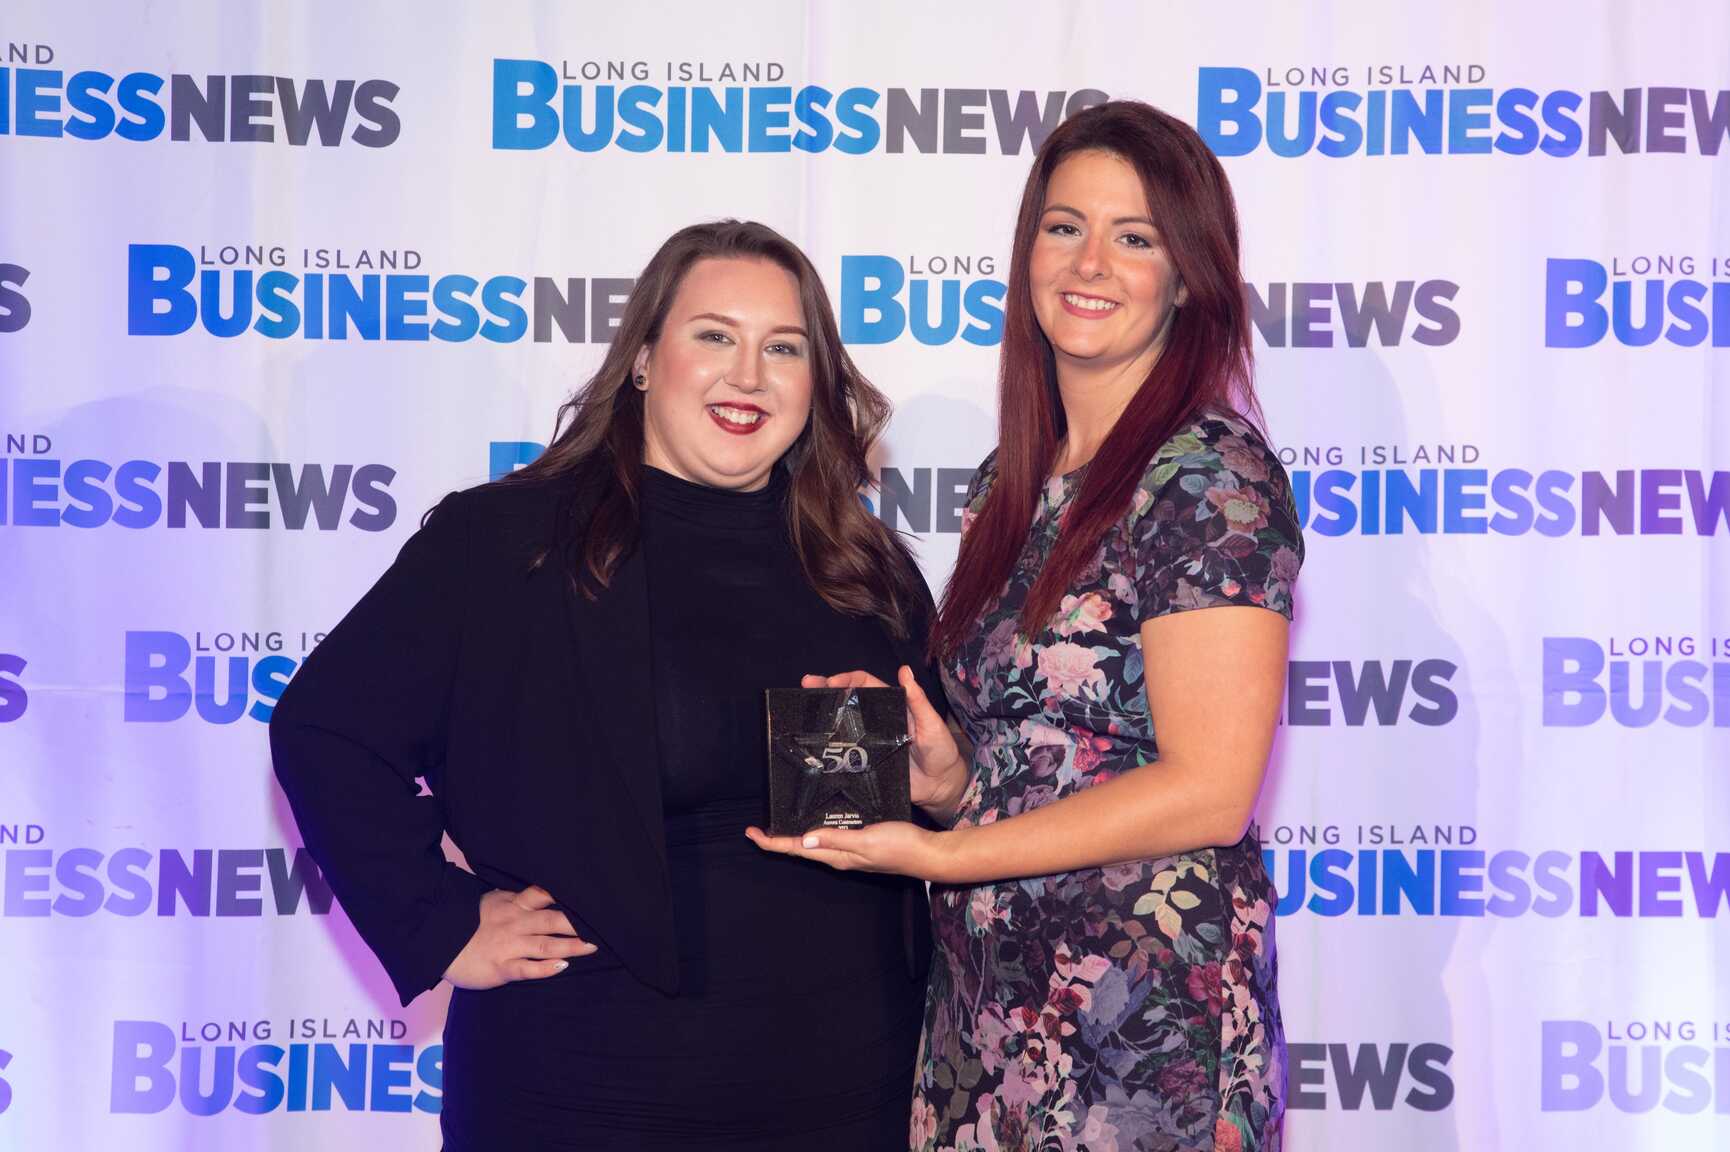 Lauren Jarvis awarded LIBN’s Top 50 Women in Business!